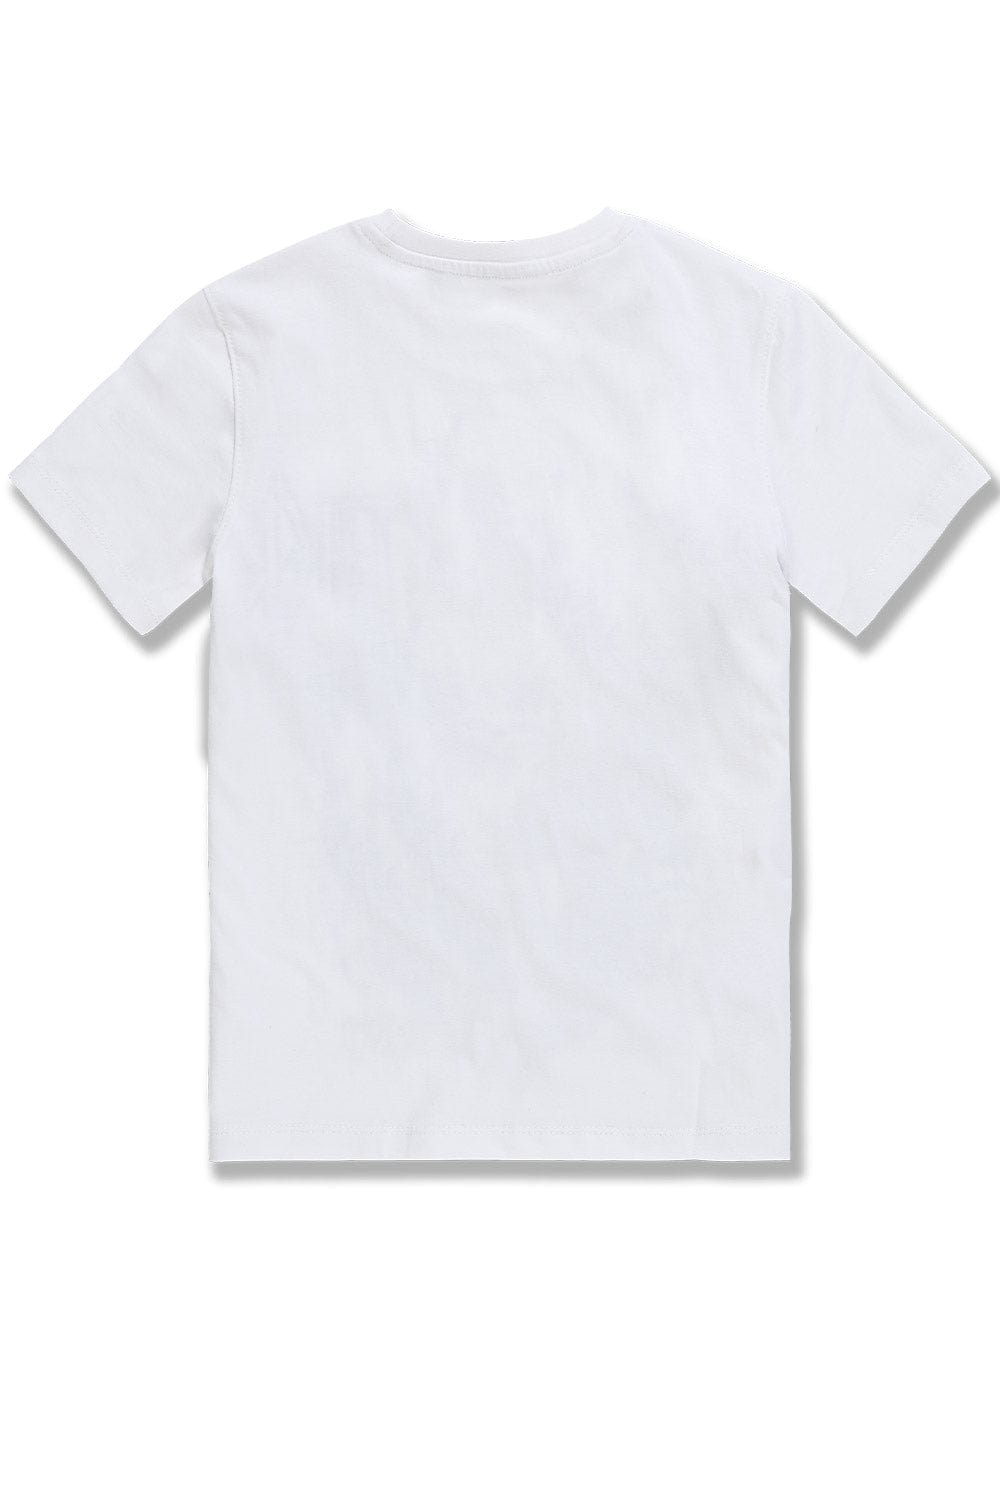 BB Kids Blak Panther T-Shirt (White)